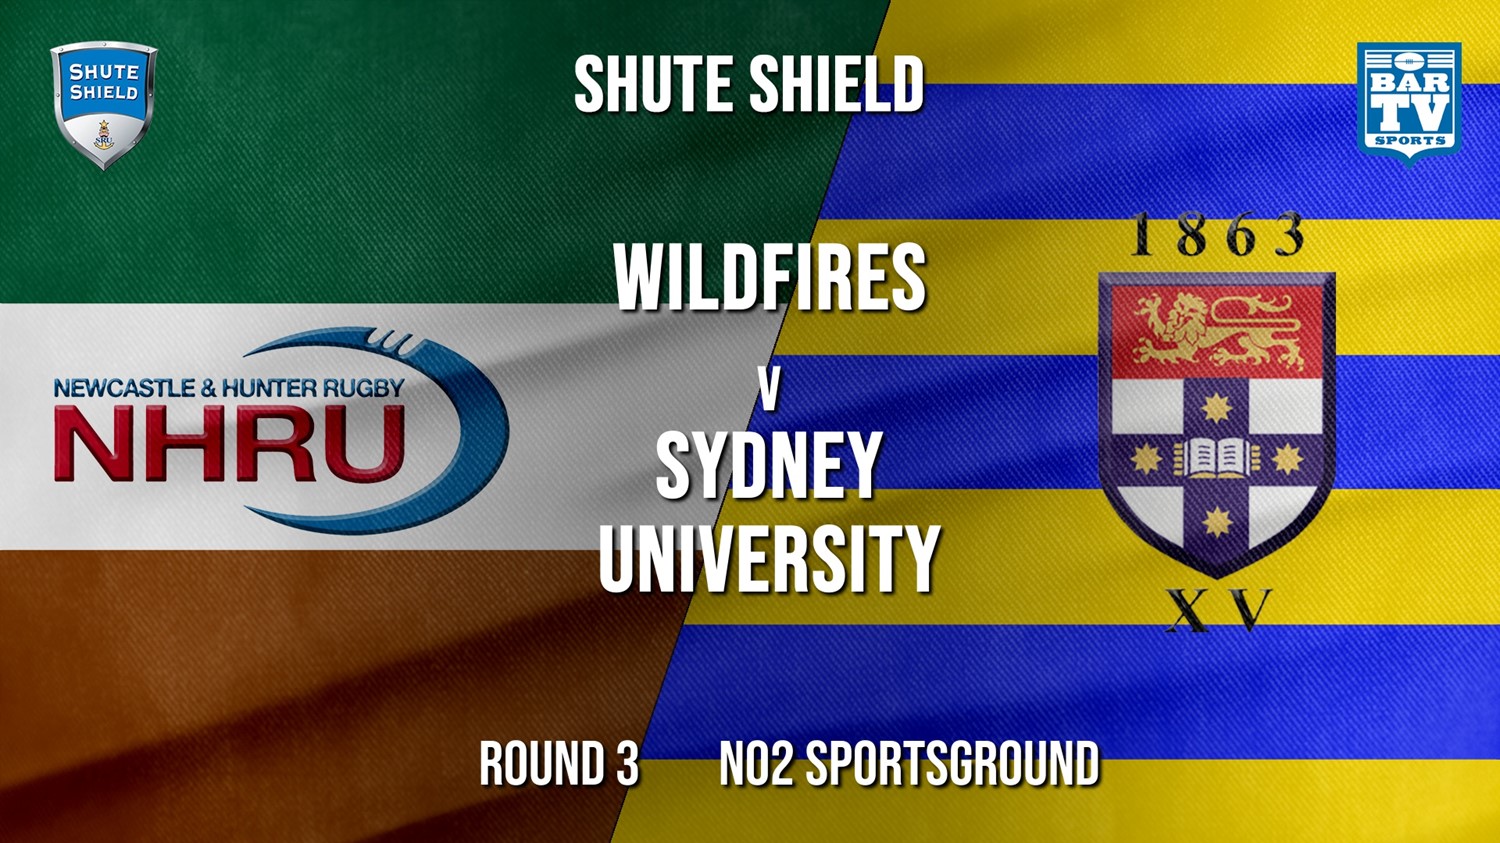 Shute Shield Round 3 - NHRU Wildfires v Sydney University (1) Minigame Slate Image